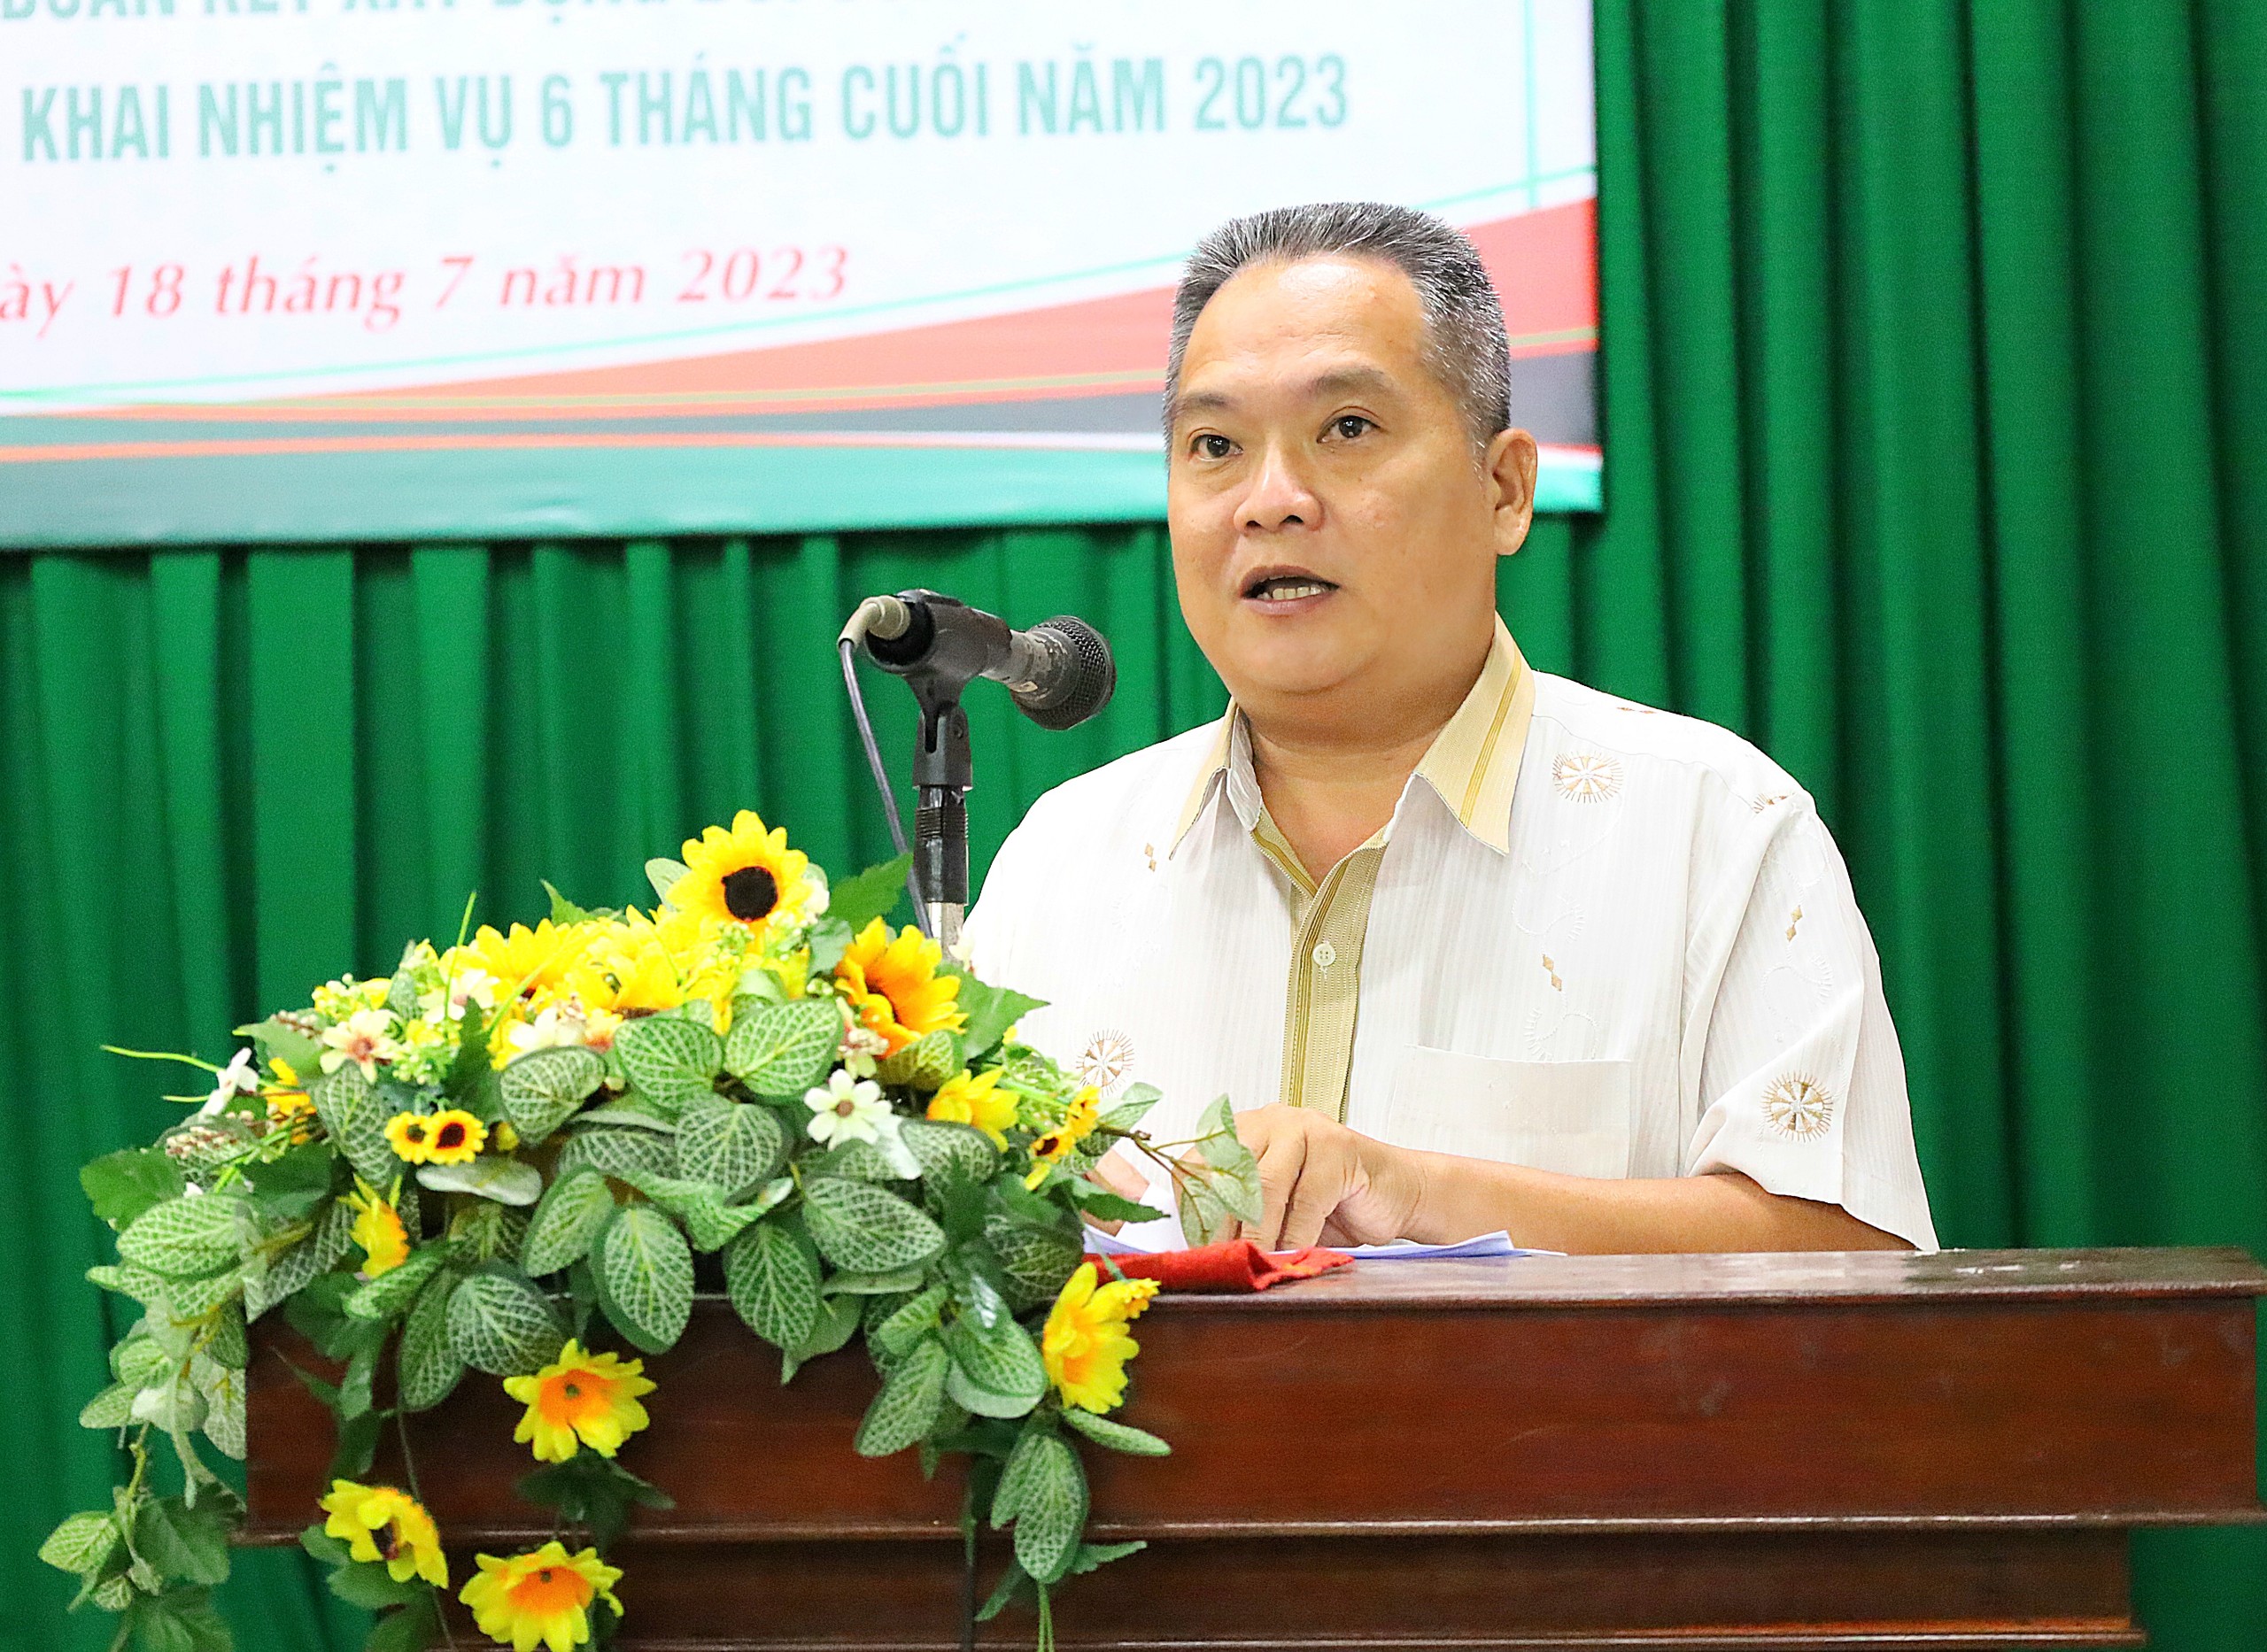 Ông Trần Văn Tốt - Phó phòng Văn hóa - Thông tin quận Ninh Kiều phát biểu tham luận tại hội nghị.